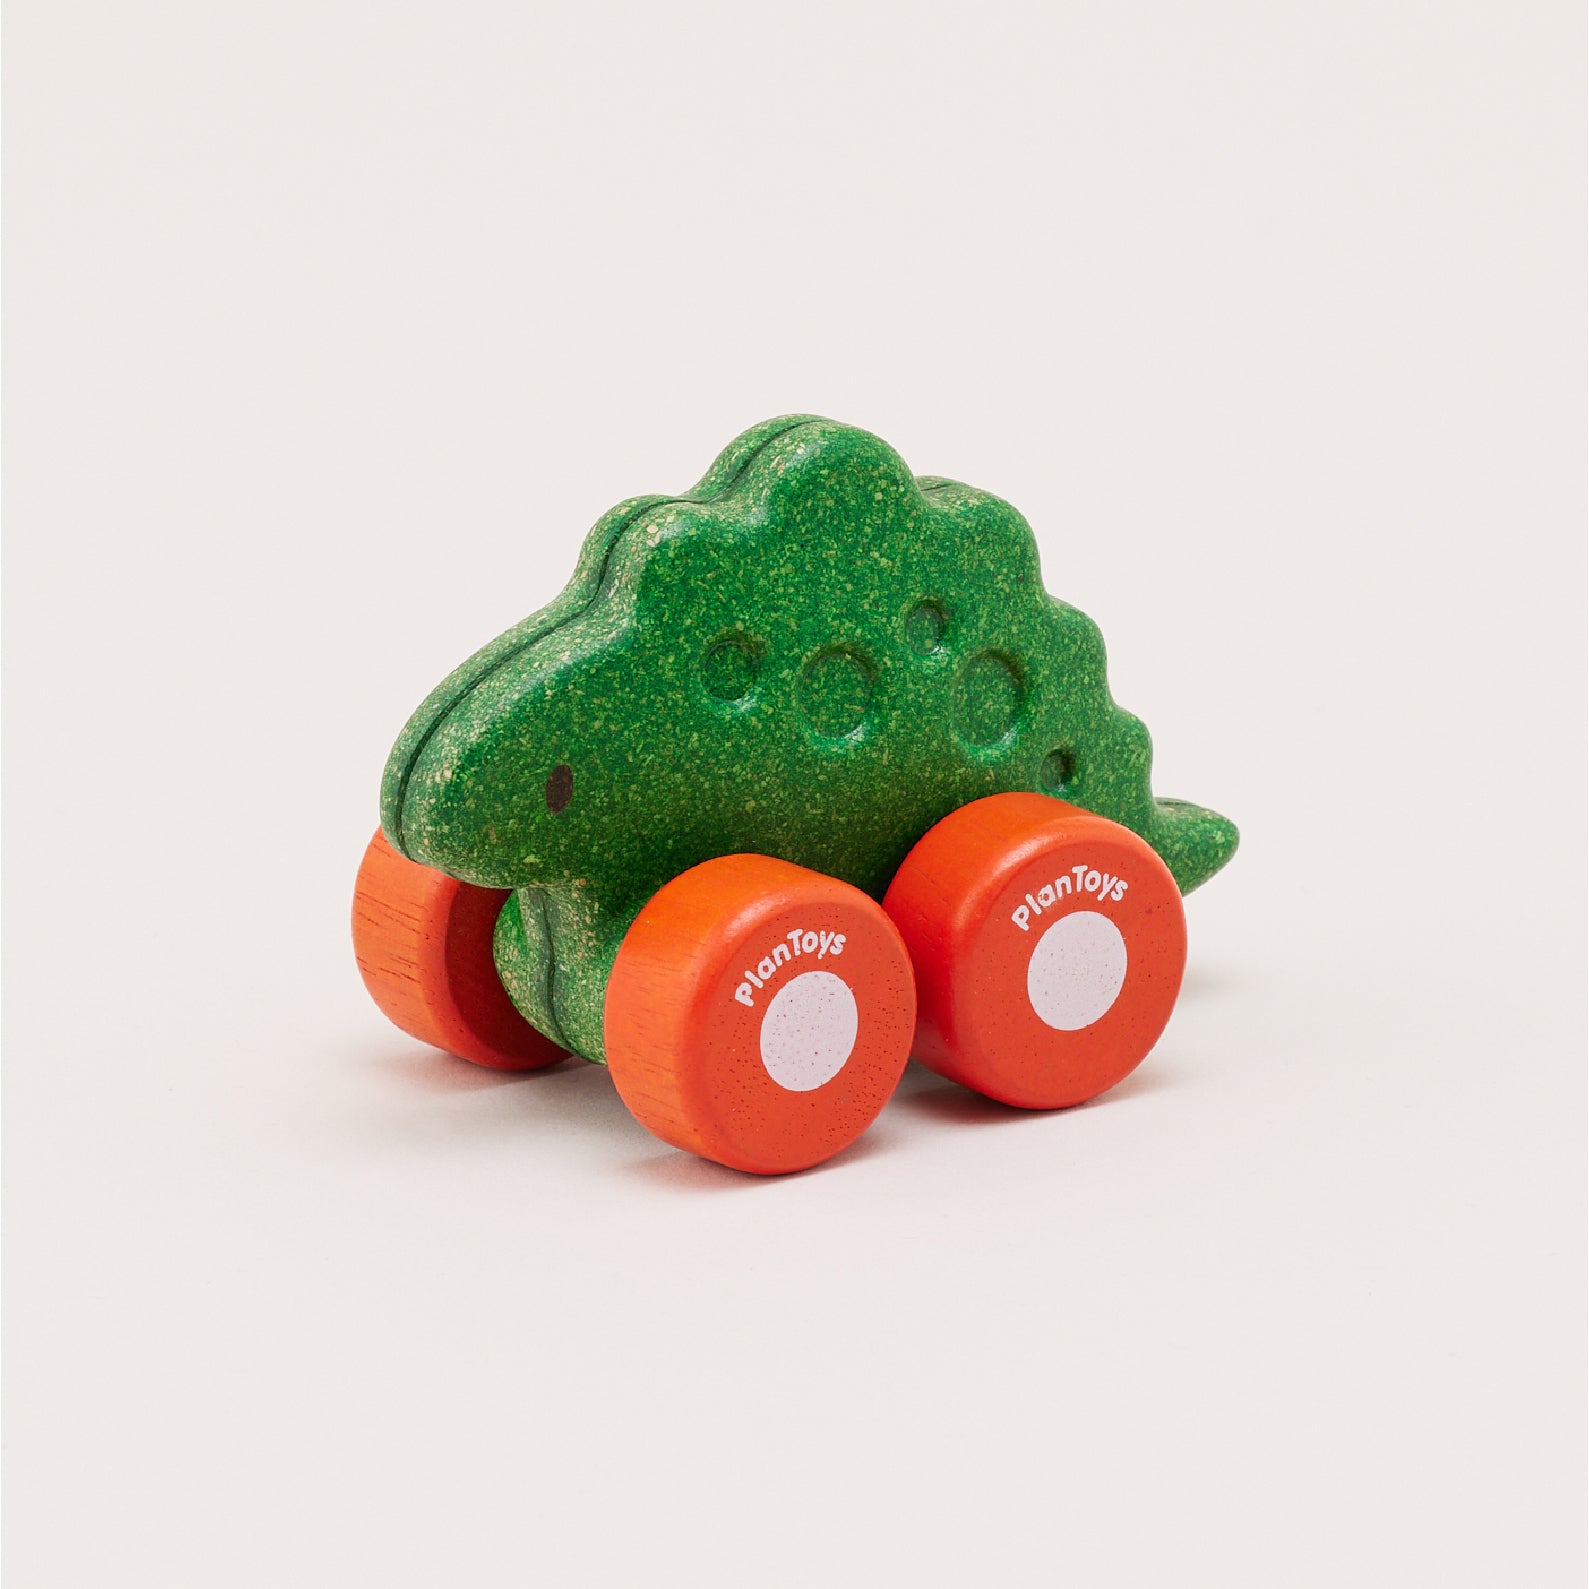 Plantoys Dino Car - Stego | ของเล่นไม้ ชุดรถไดโนเสาร์